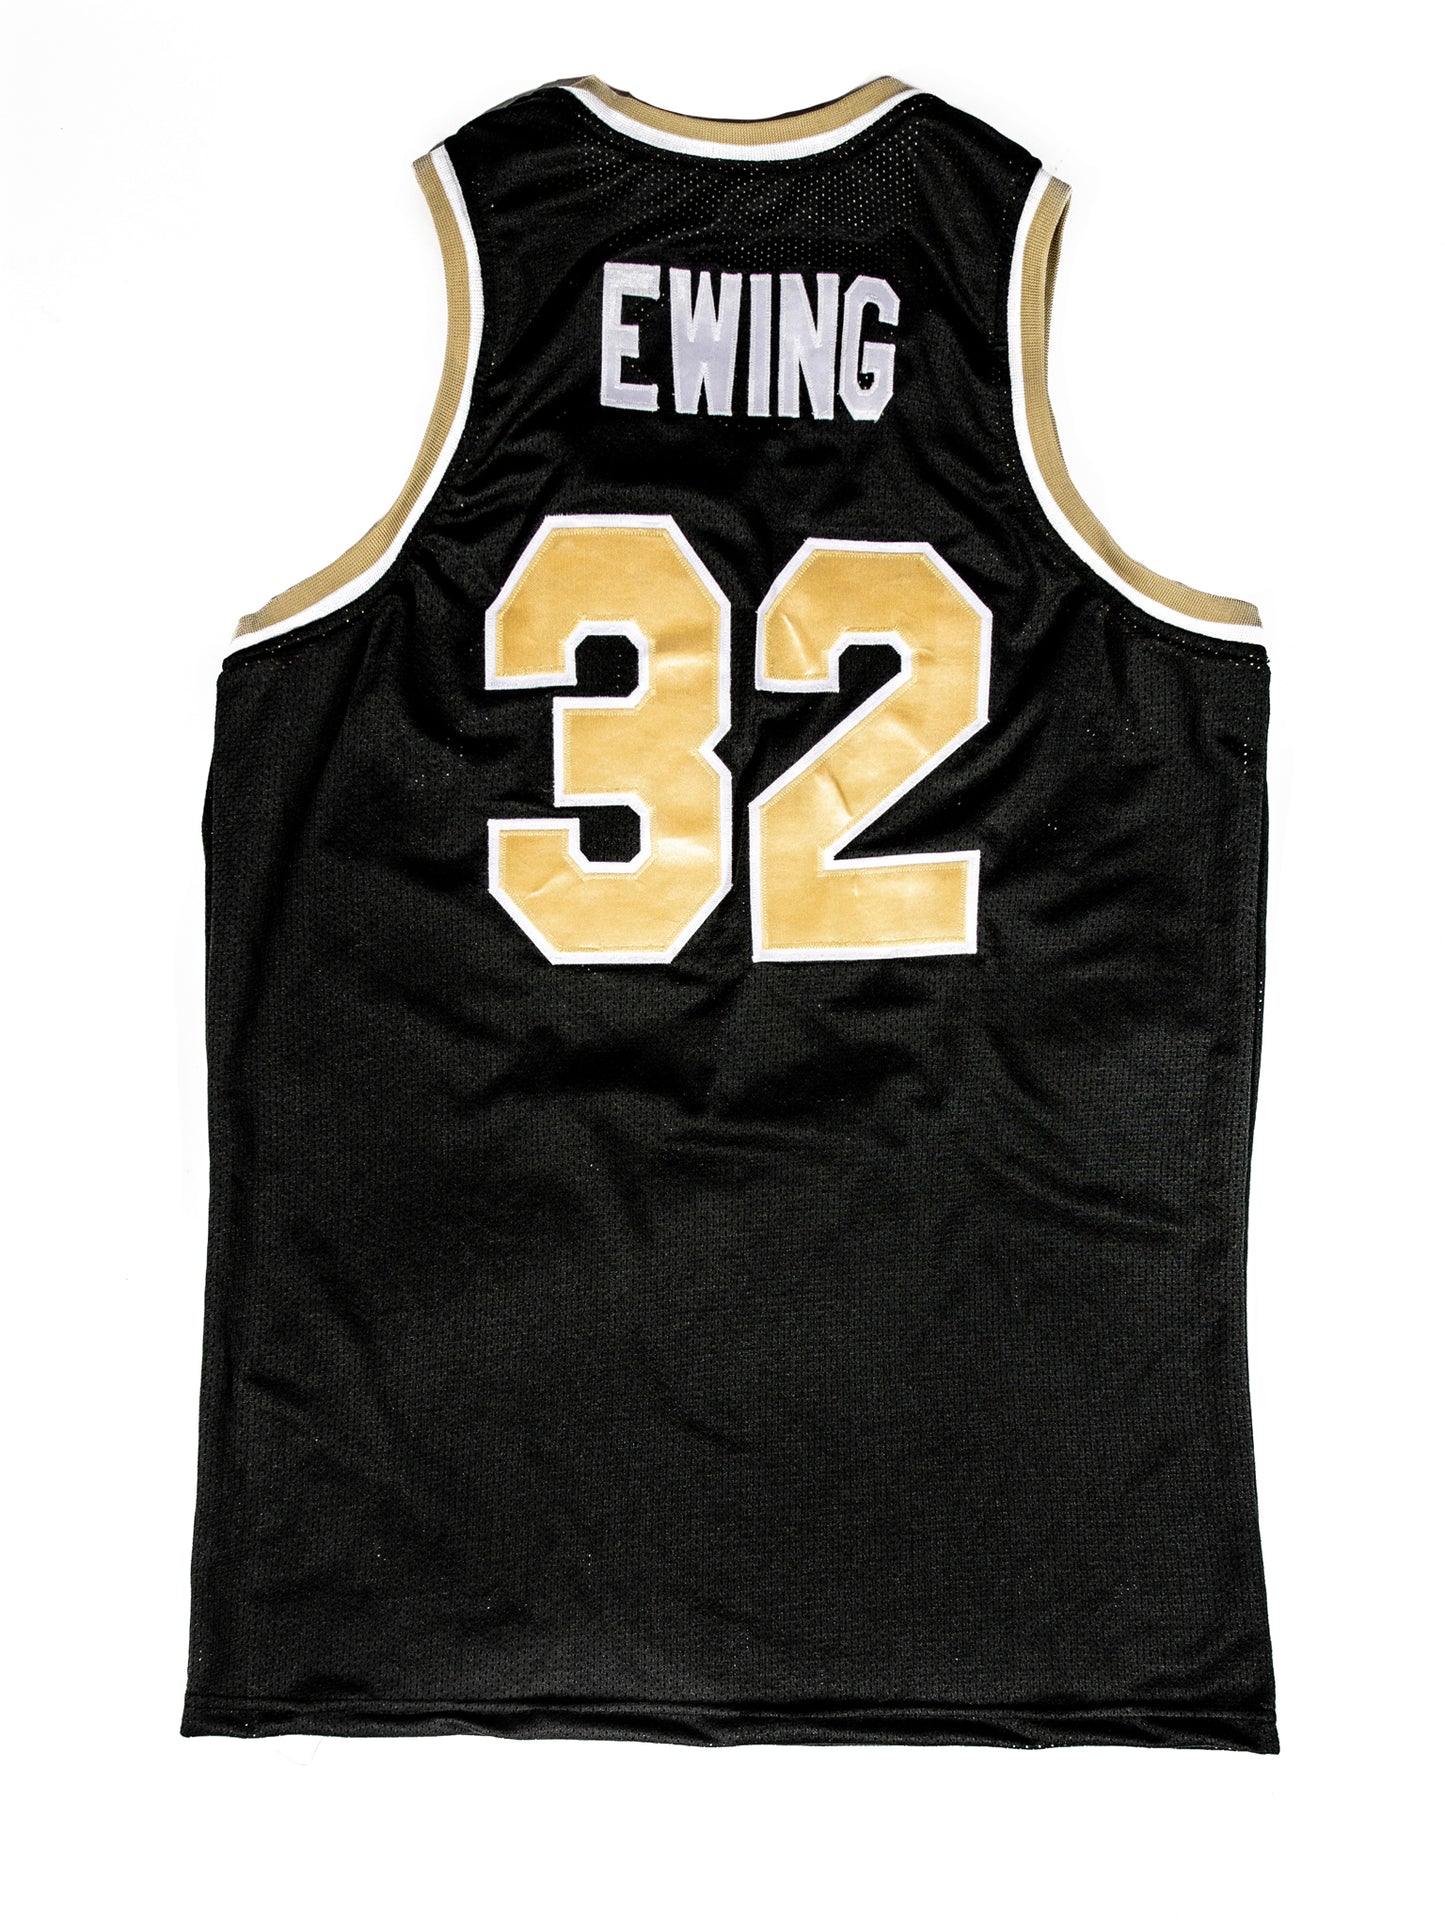 Patrick Ewing Throwback Jersey